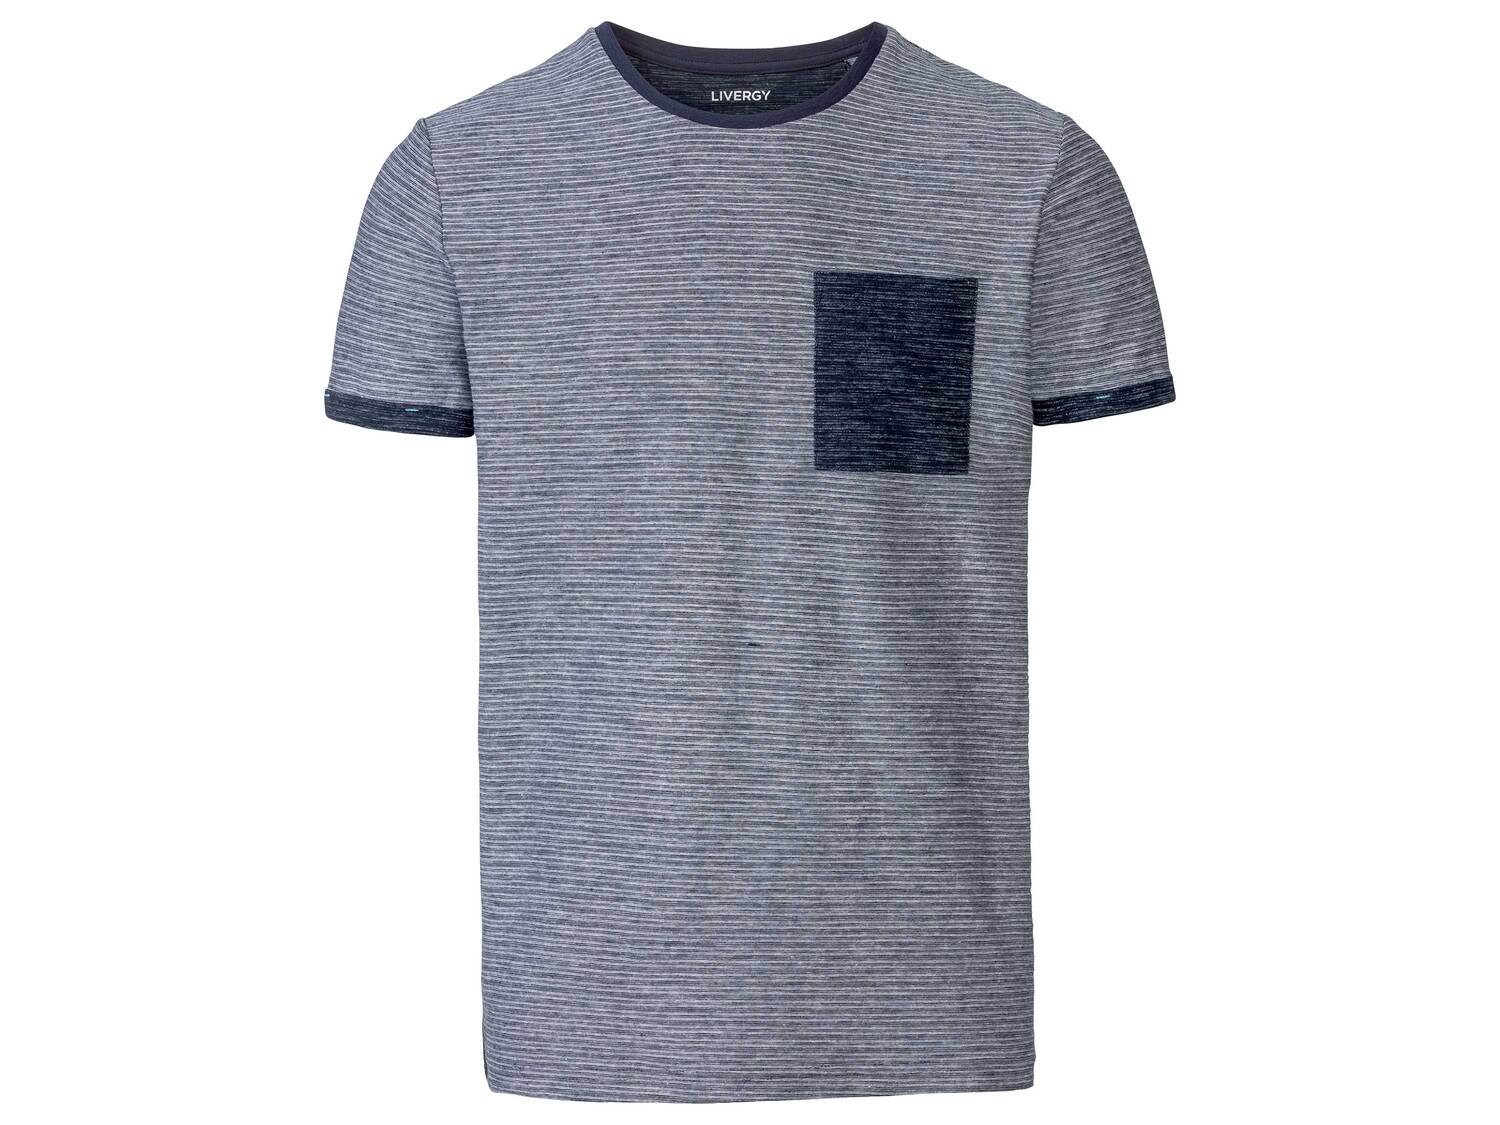 T-shirt Livergy, le prix 3.99 € 
- Du S au XL selon modèle.
- Ex. 100 % coton
Caractéristiques

- ...